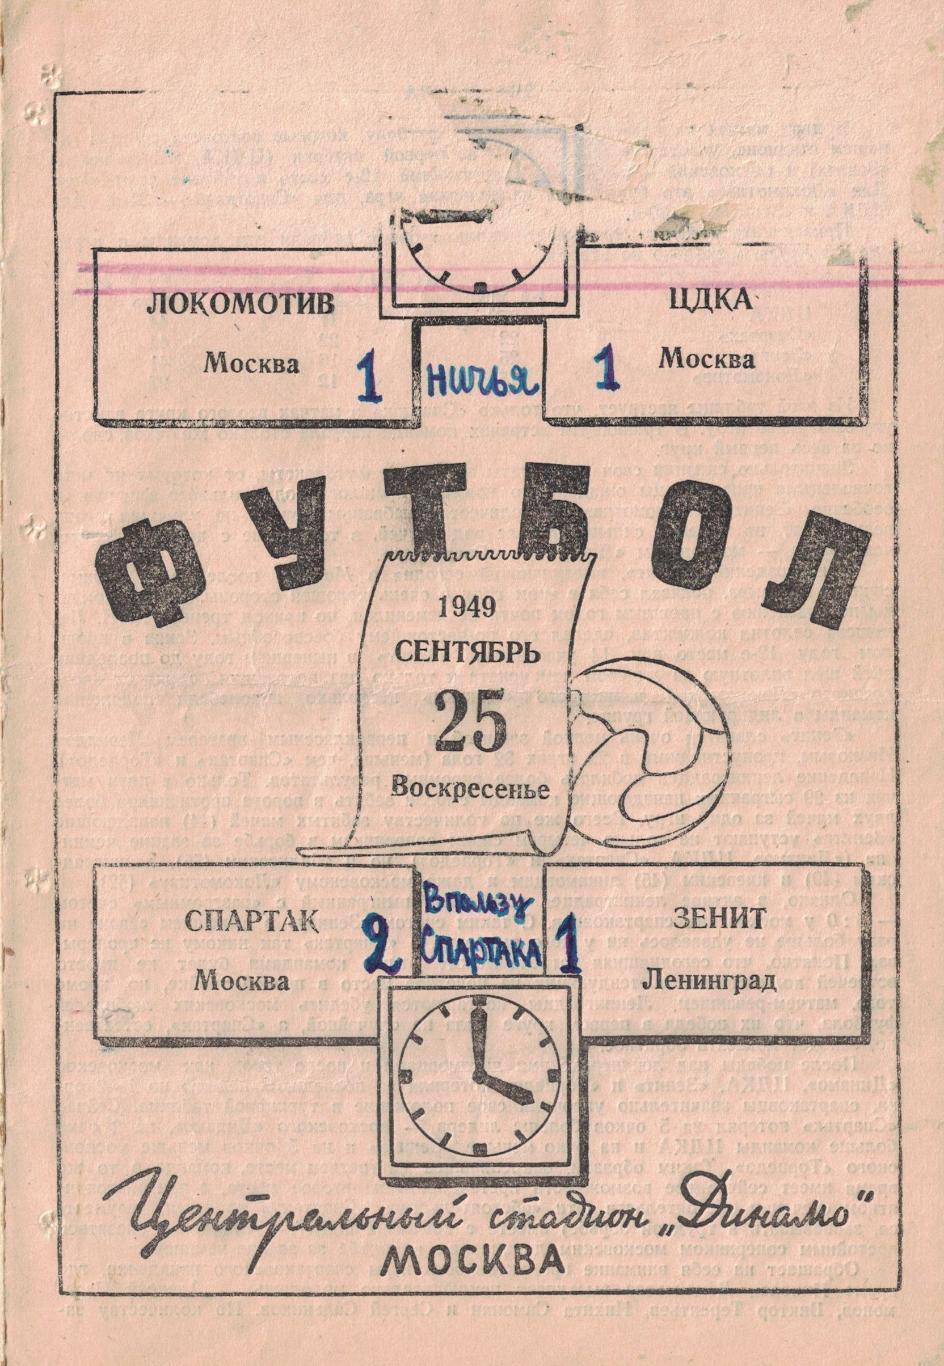 Локомотив Москва - ЦДКА, Спартак Москва - Зенит - Ленинград 25.09.1949